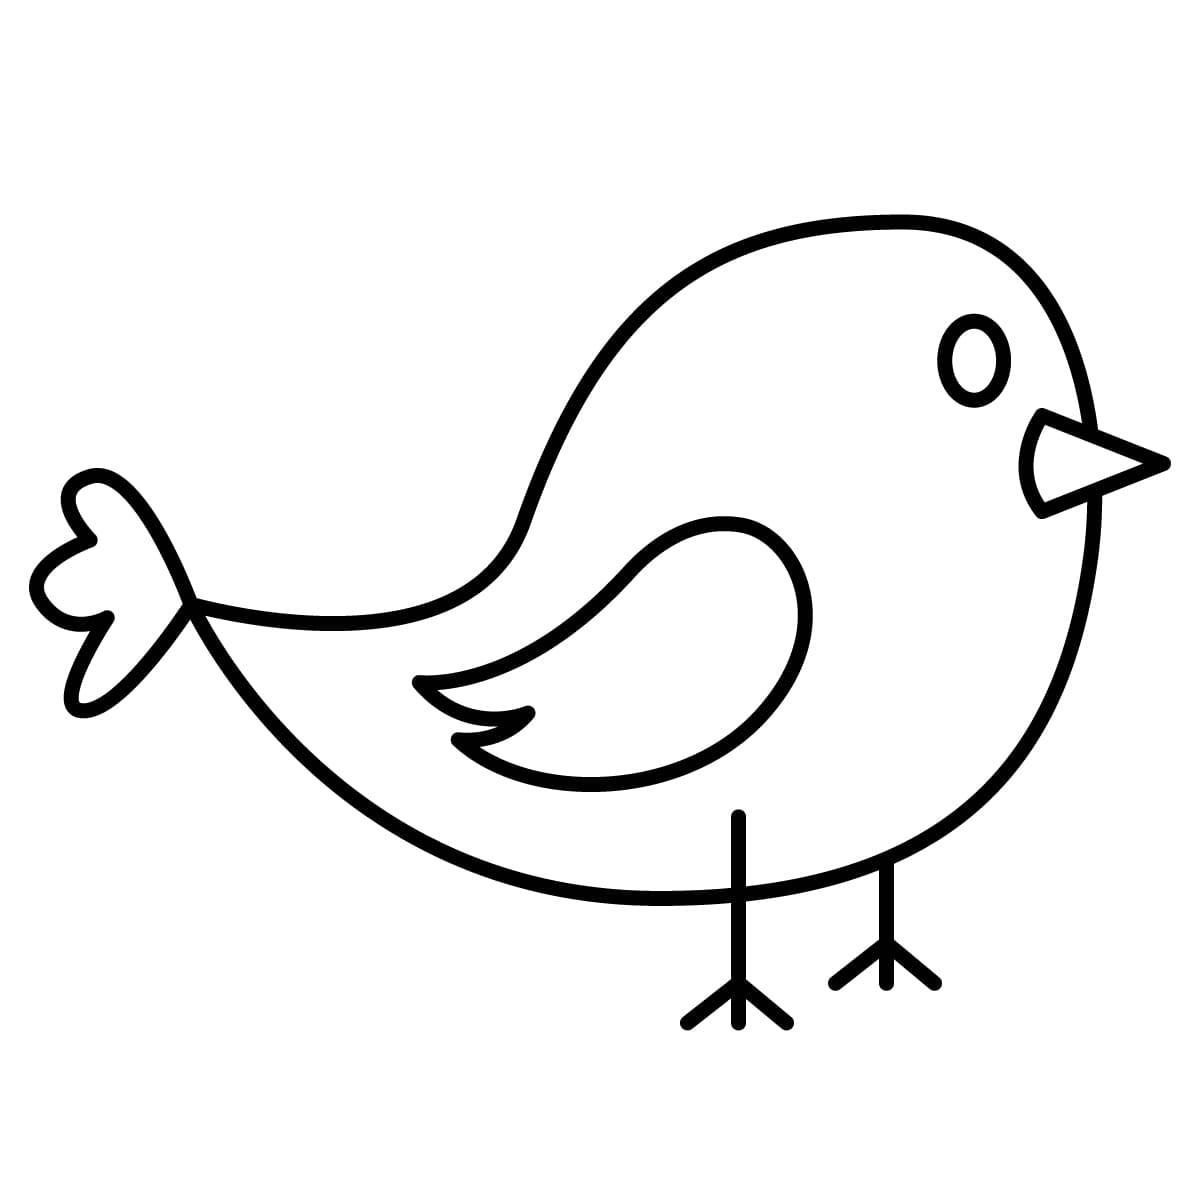 Dibujo de pájaro para colorear e imprimir - Dibujos y colores